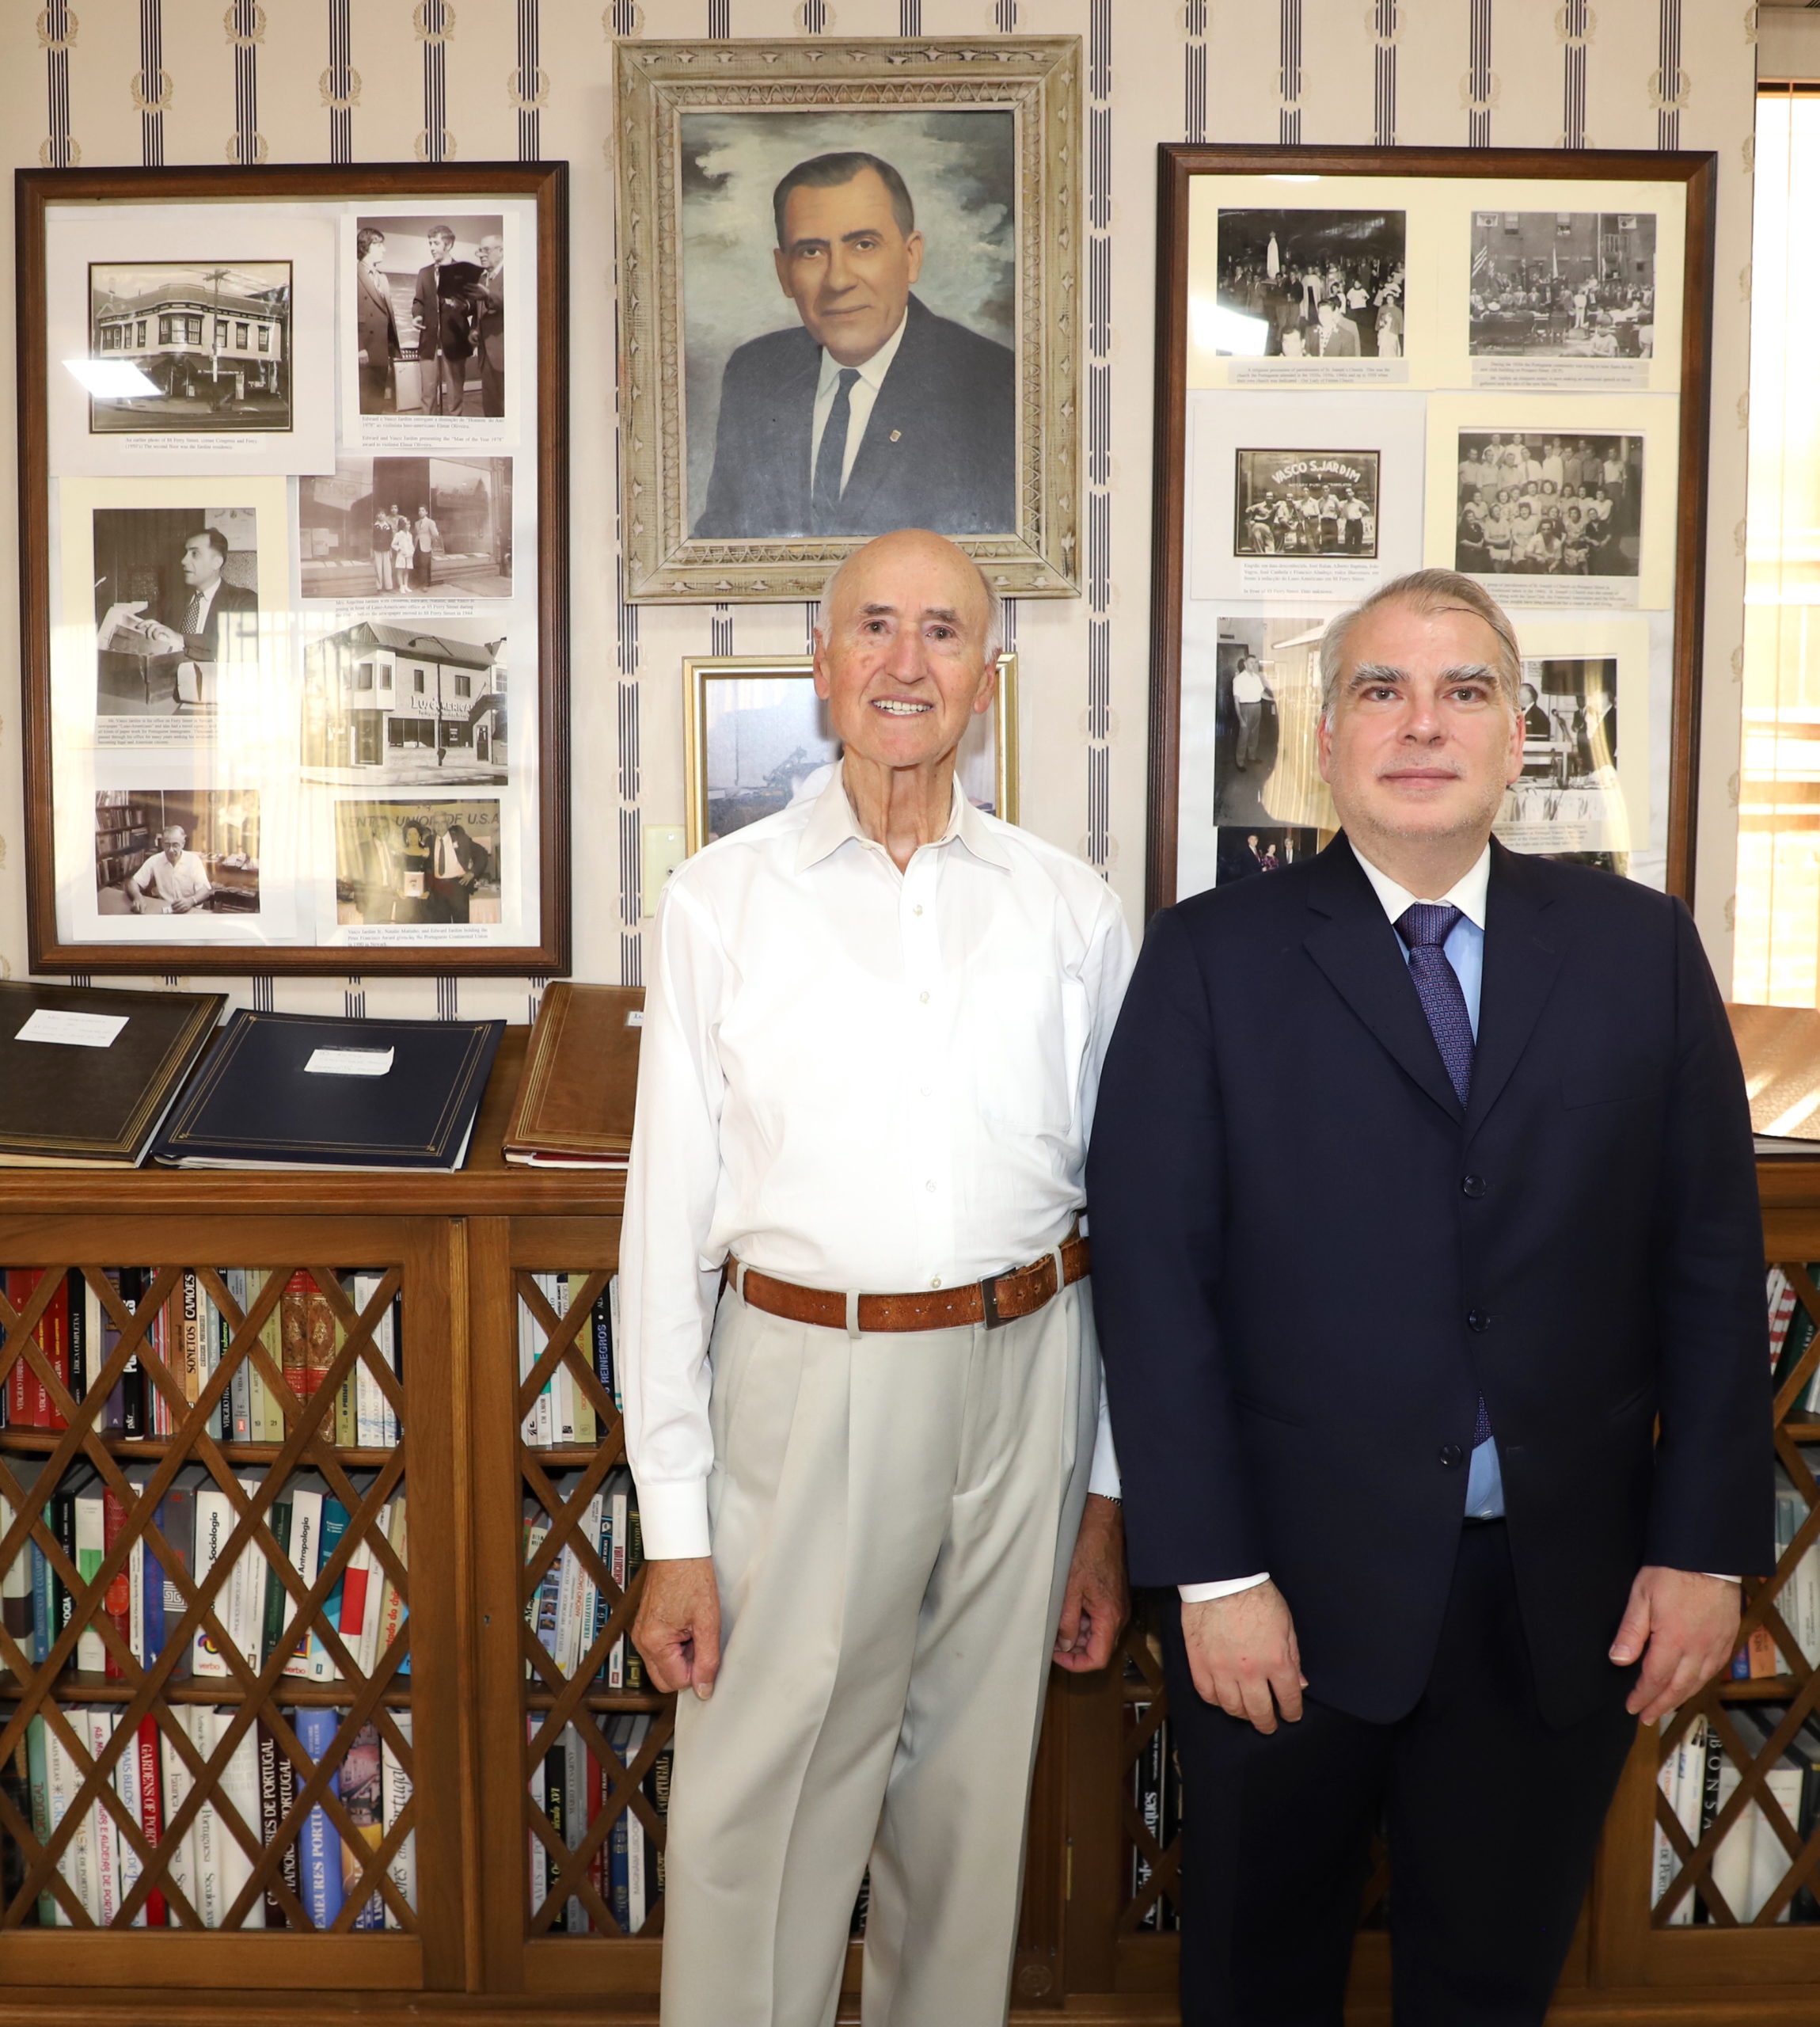 NEWARK: Cônsul-geral Luís Sequeira visitou instalações do jornal LUSO- AMERICANO no Ironbound - LusoAmericano